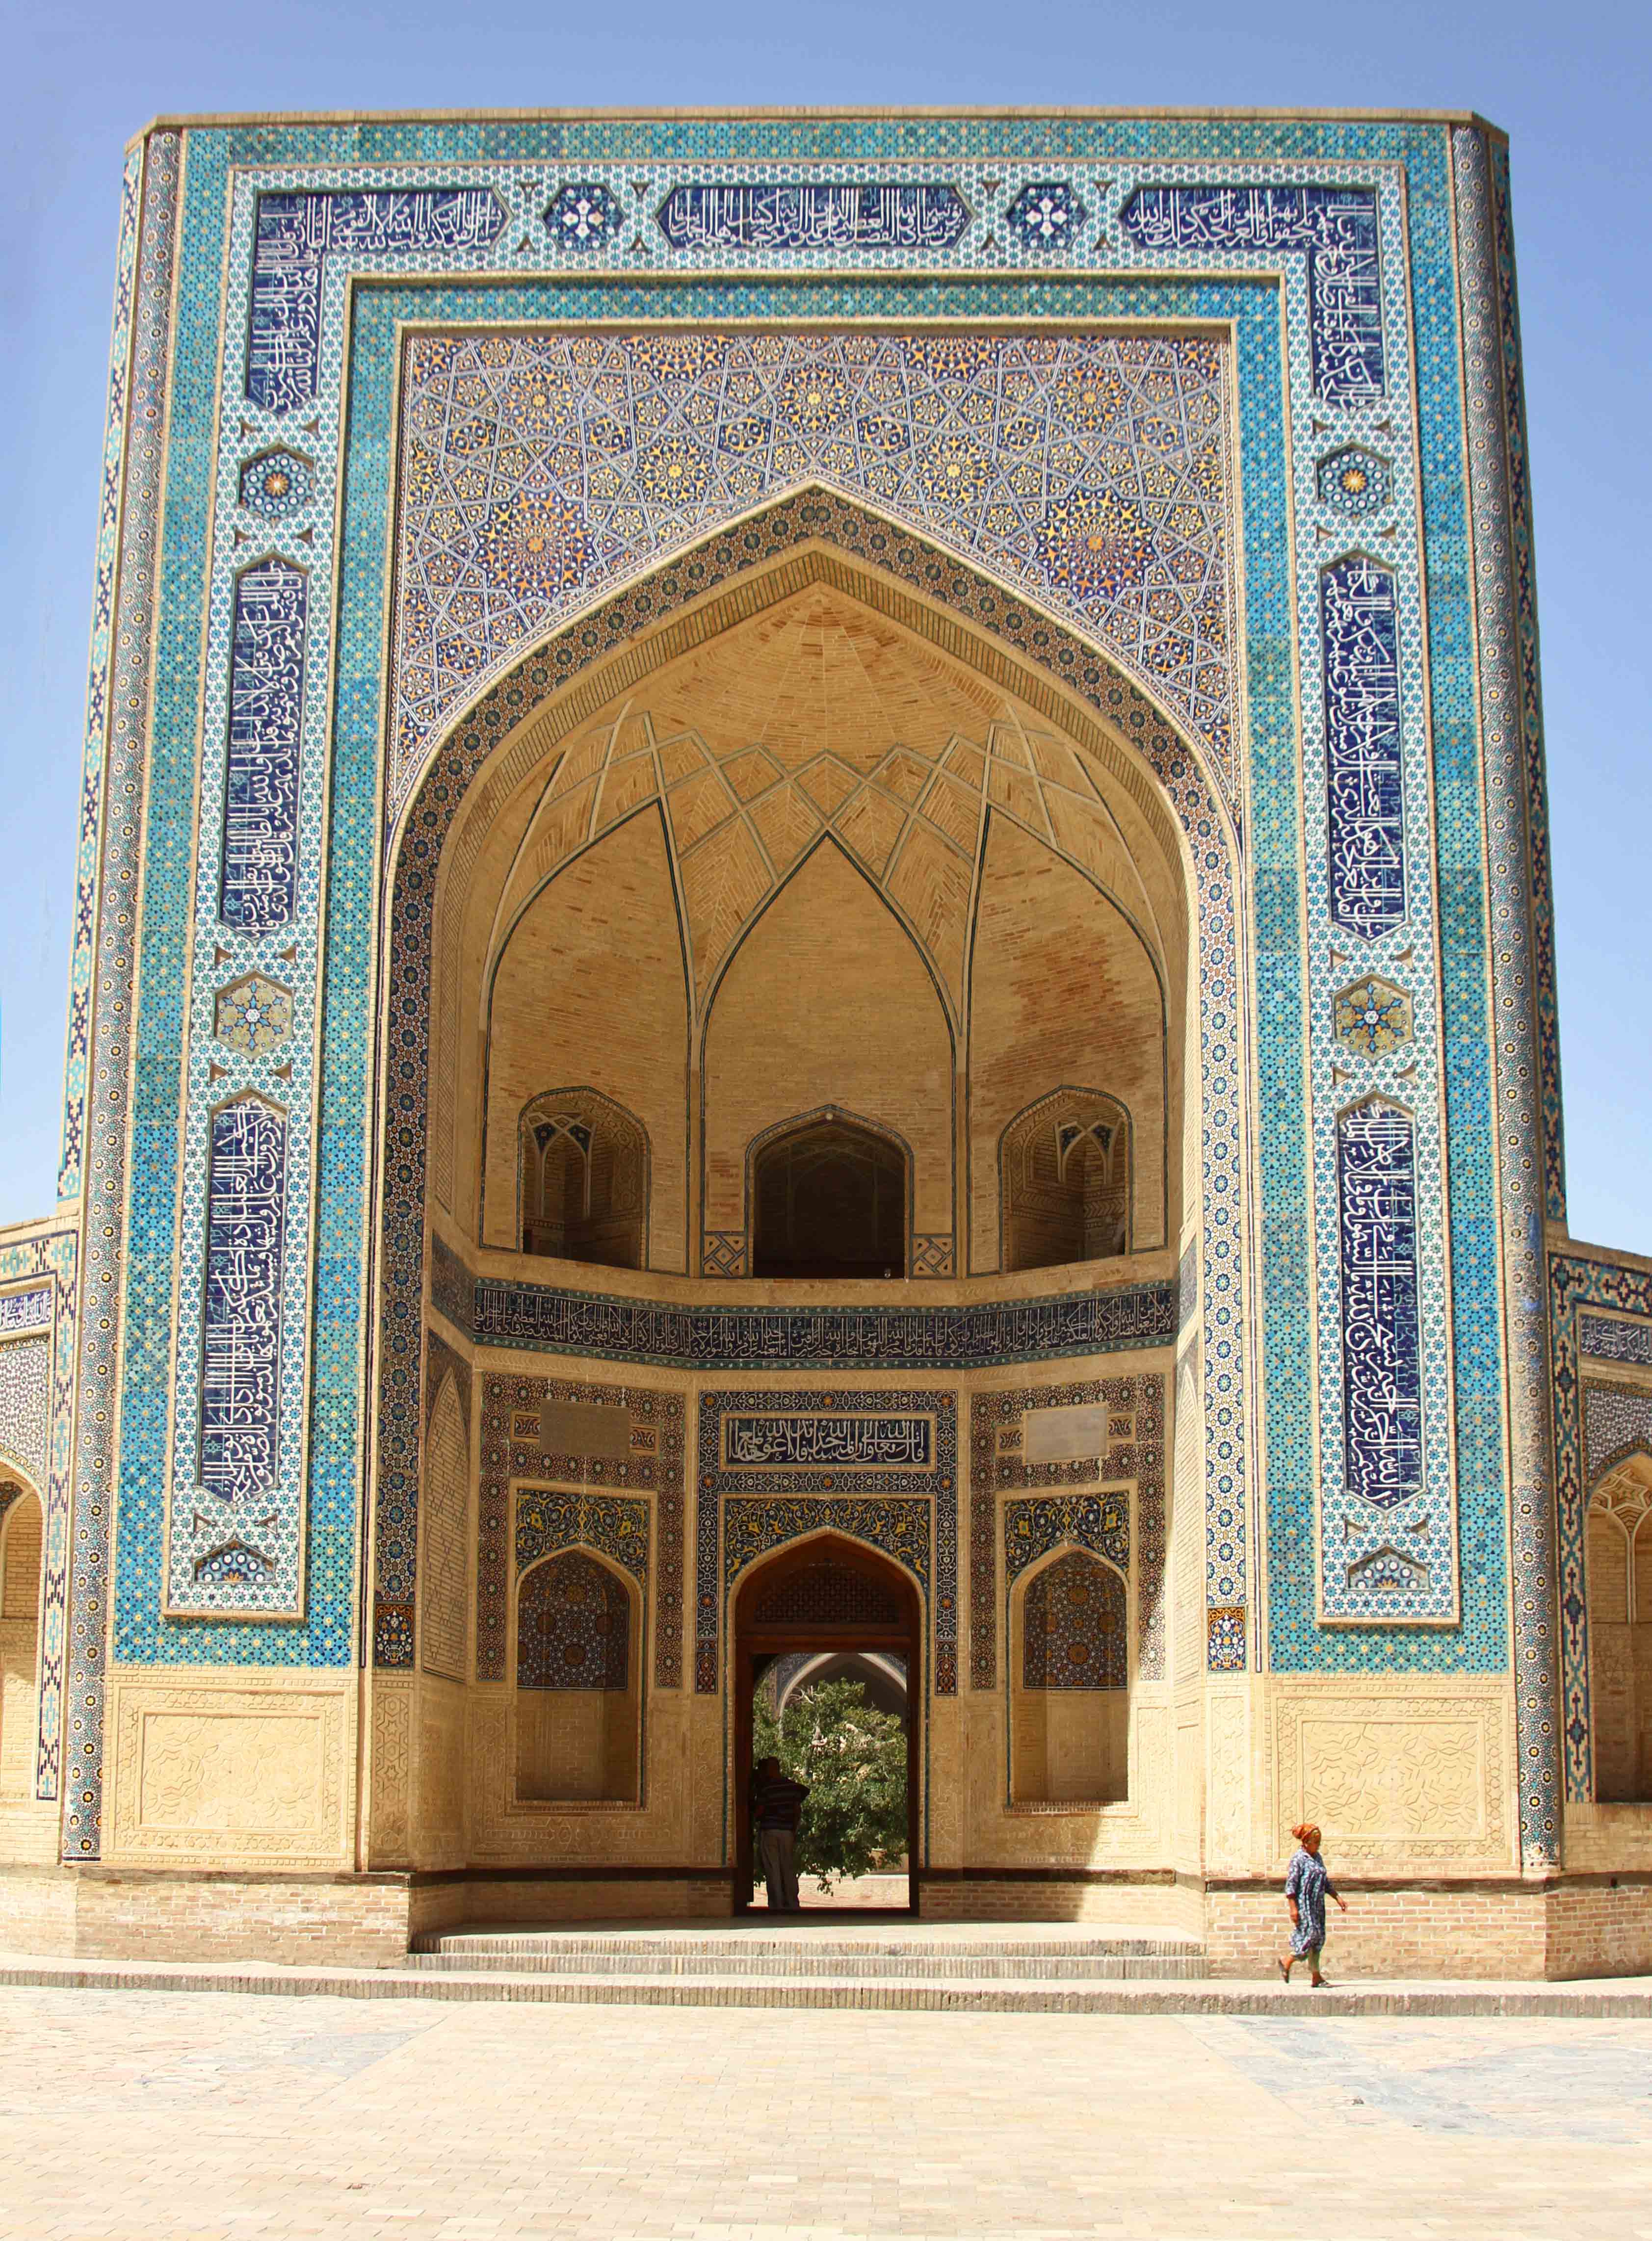 Uzbekistan photos